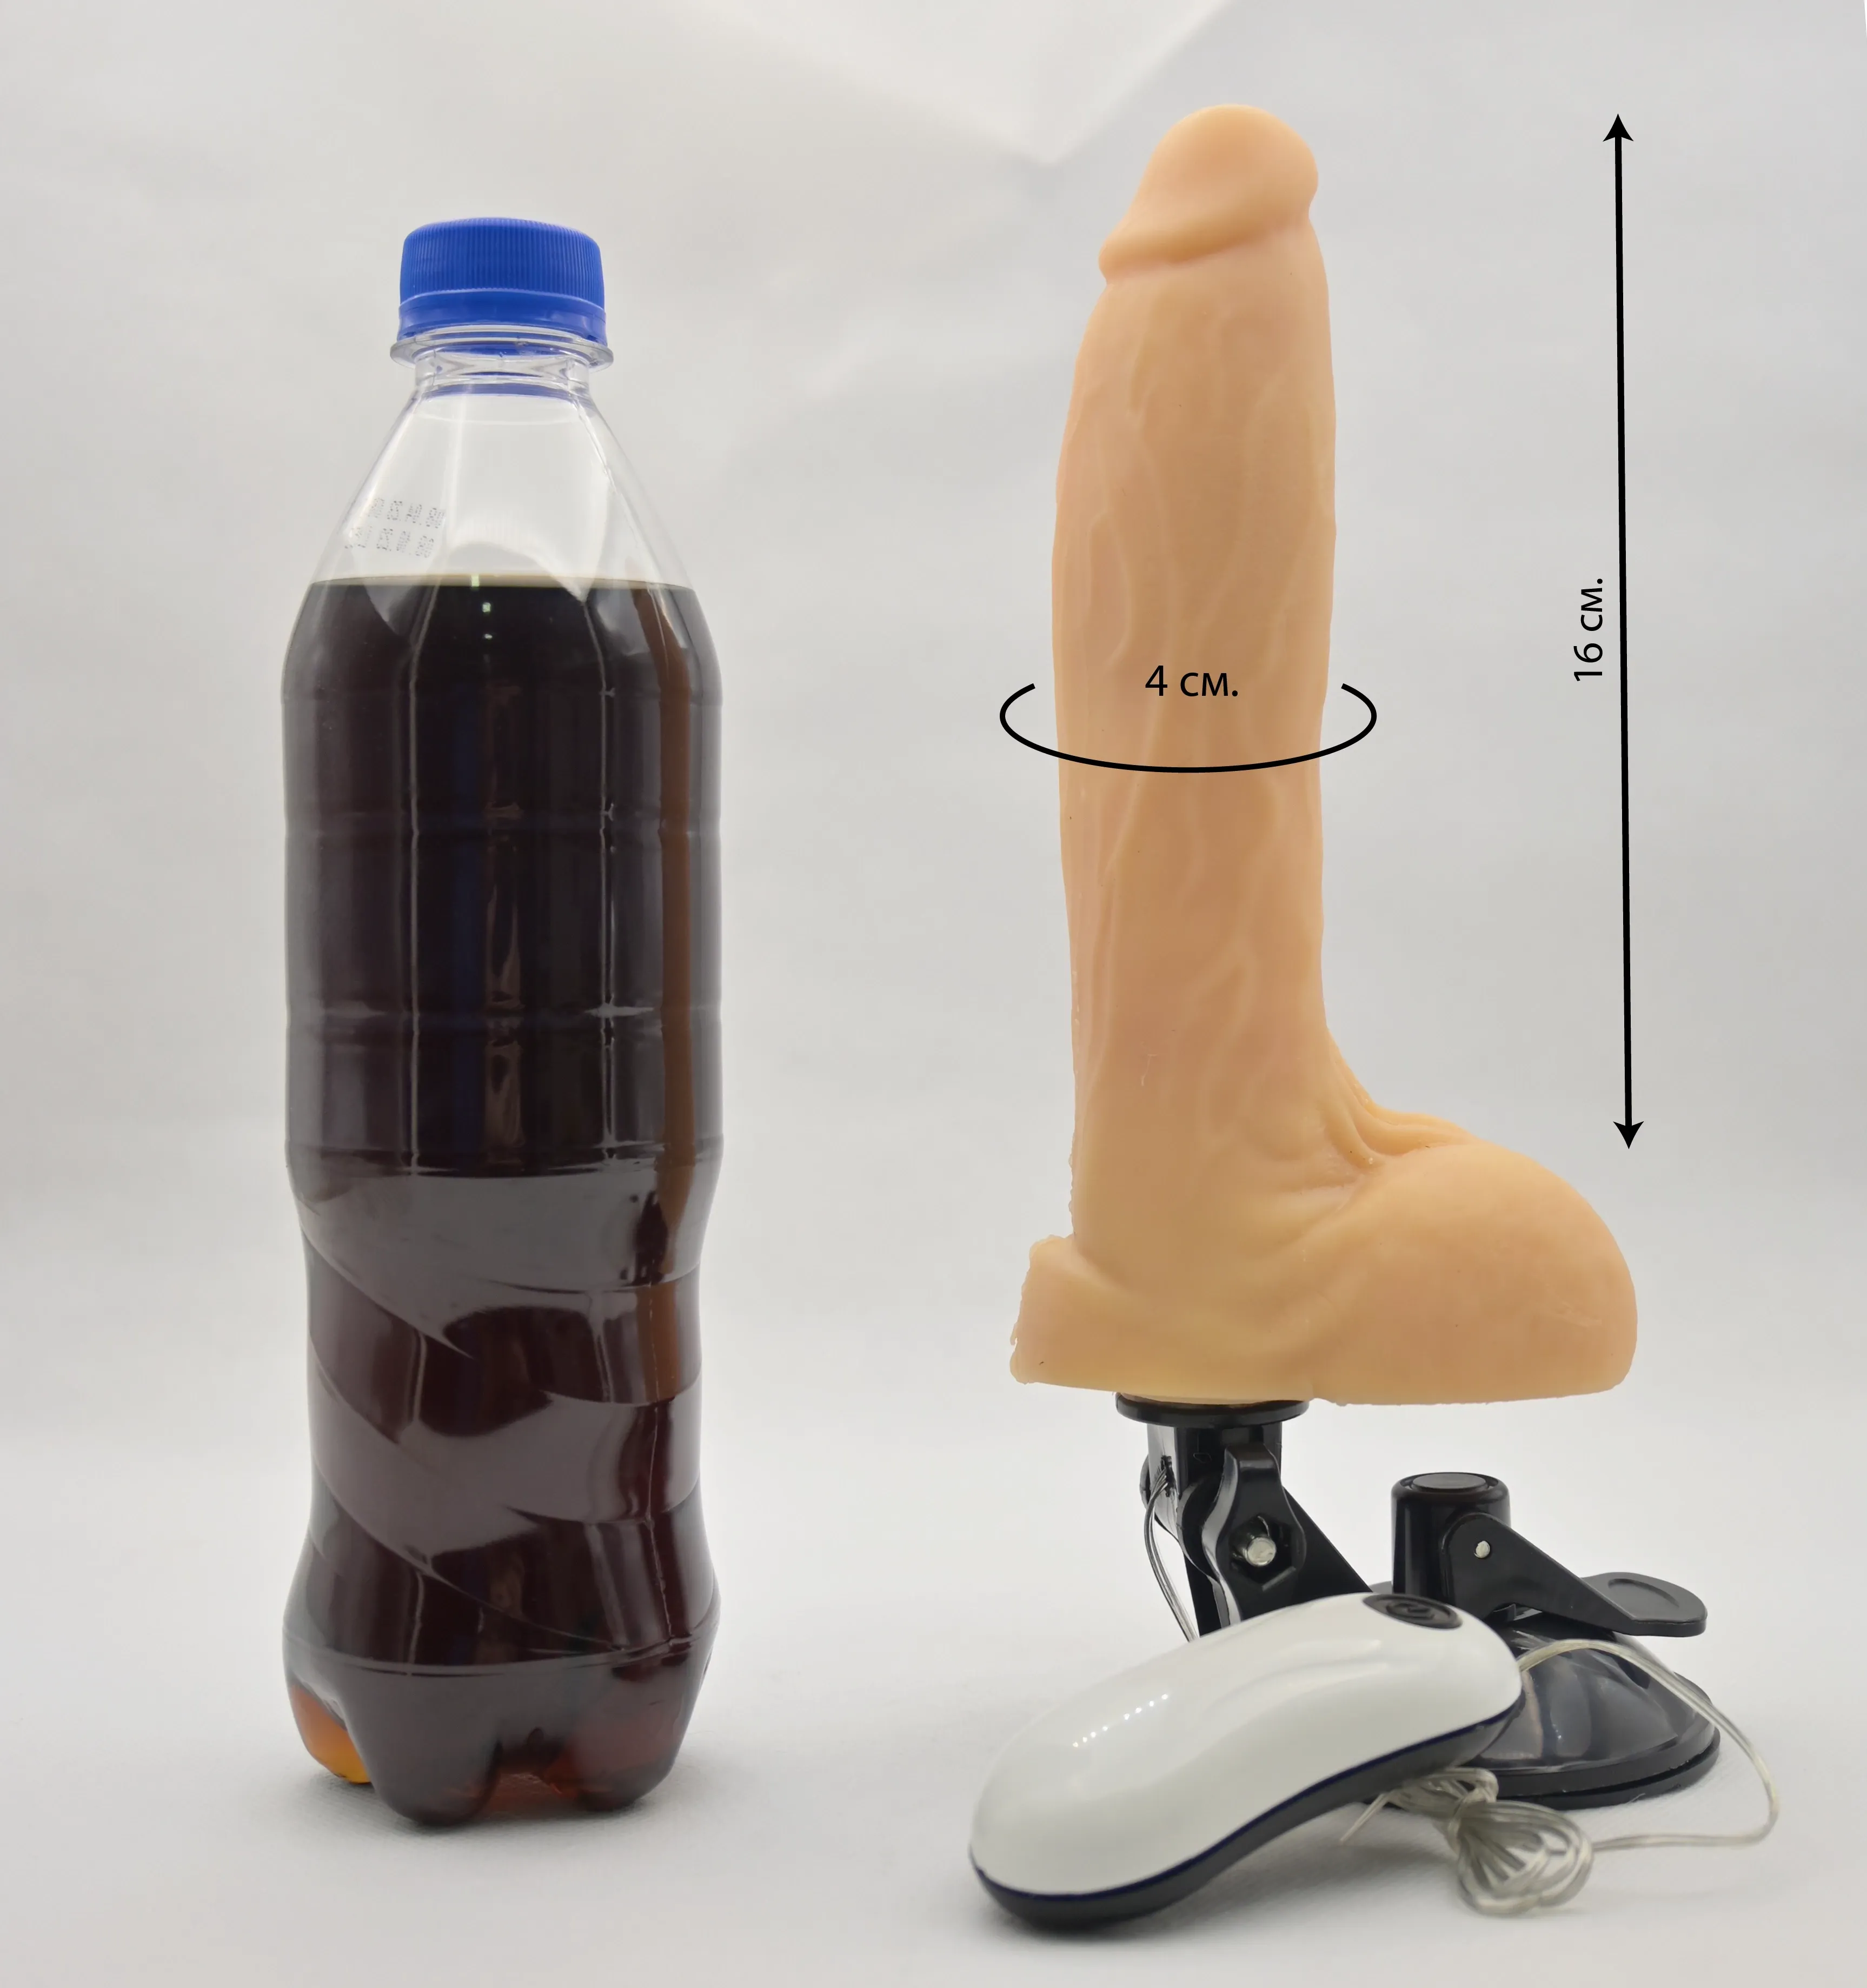 Размеры Base Cock 223002 и сравнение с бутылкой газировки